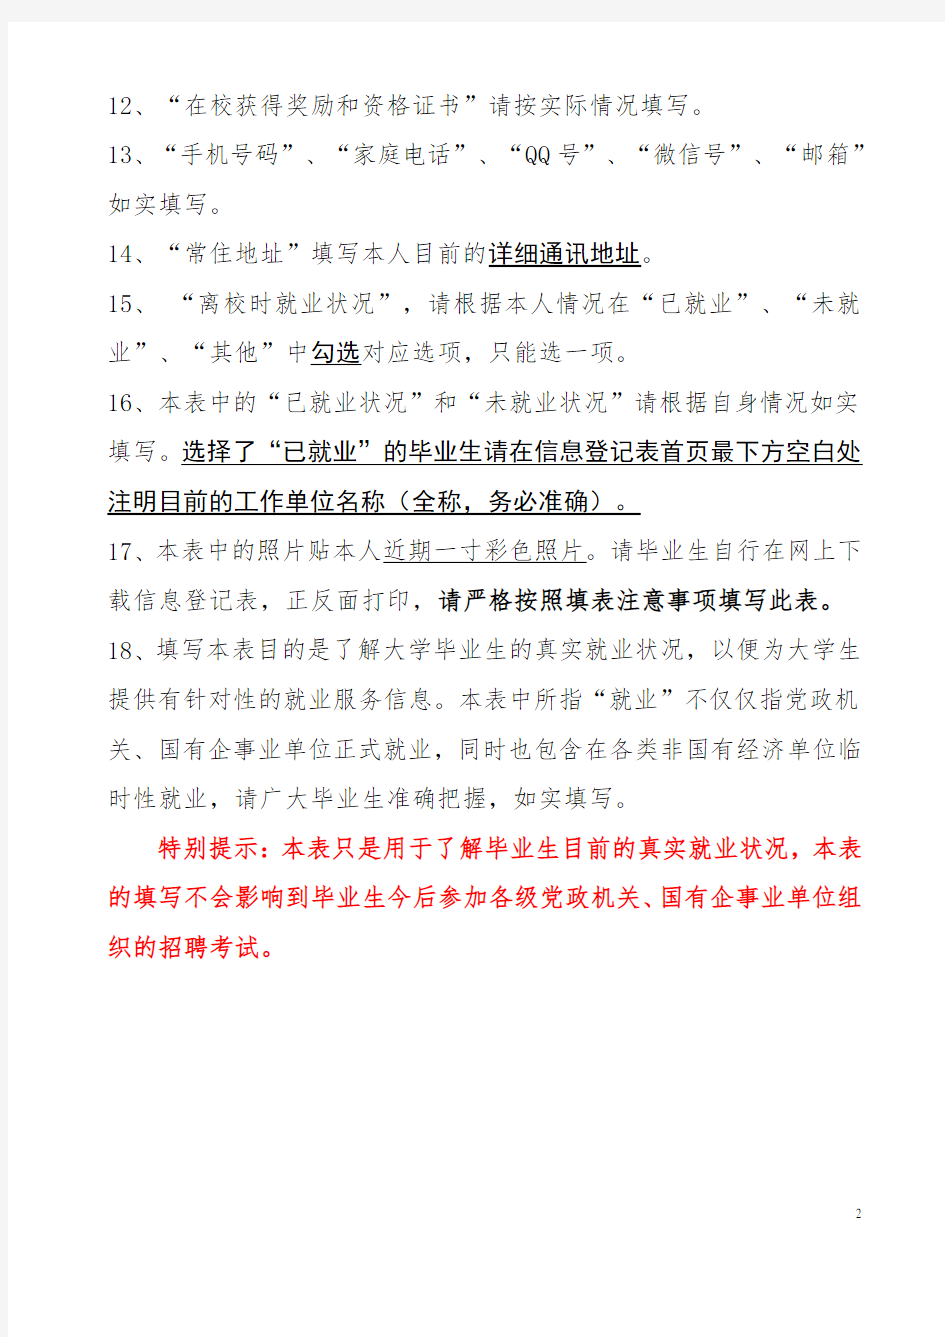 陕西省高校毕业生信息登记表(2019)